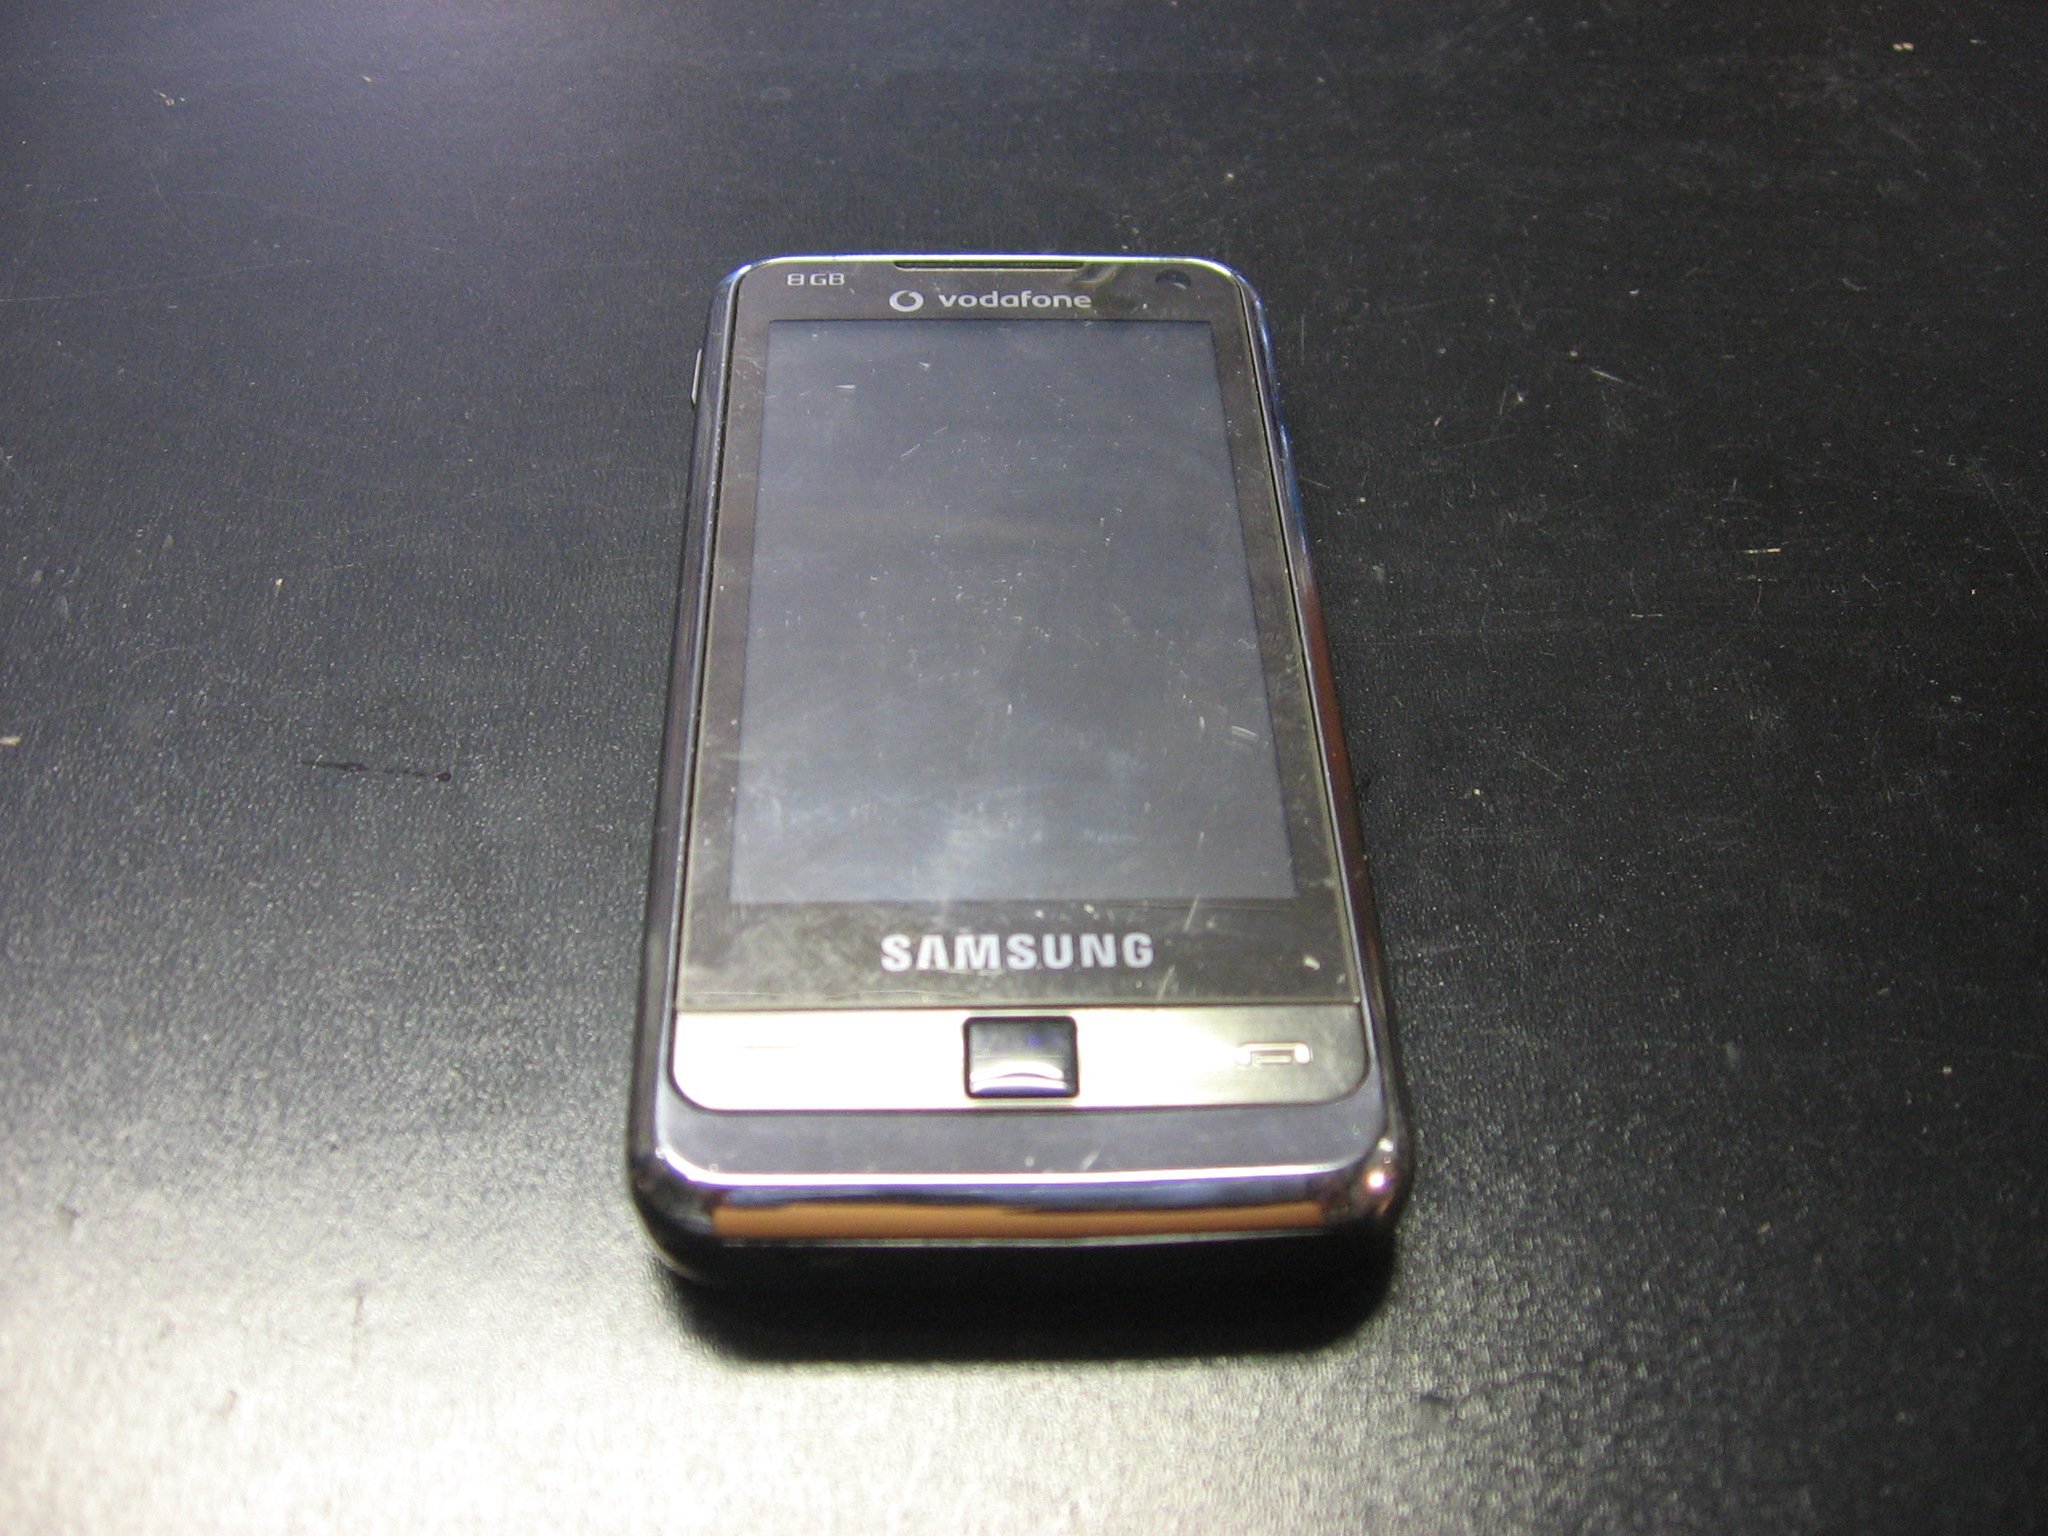 SAMSUNG 8GB I900 - USZKODZONY